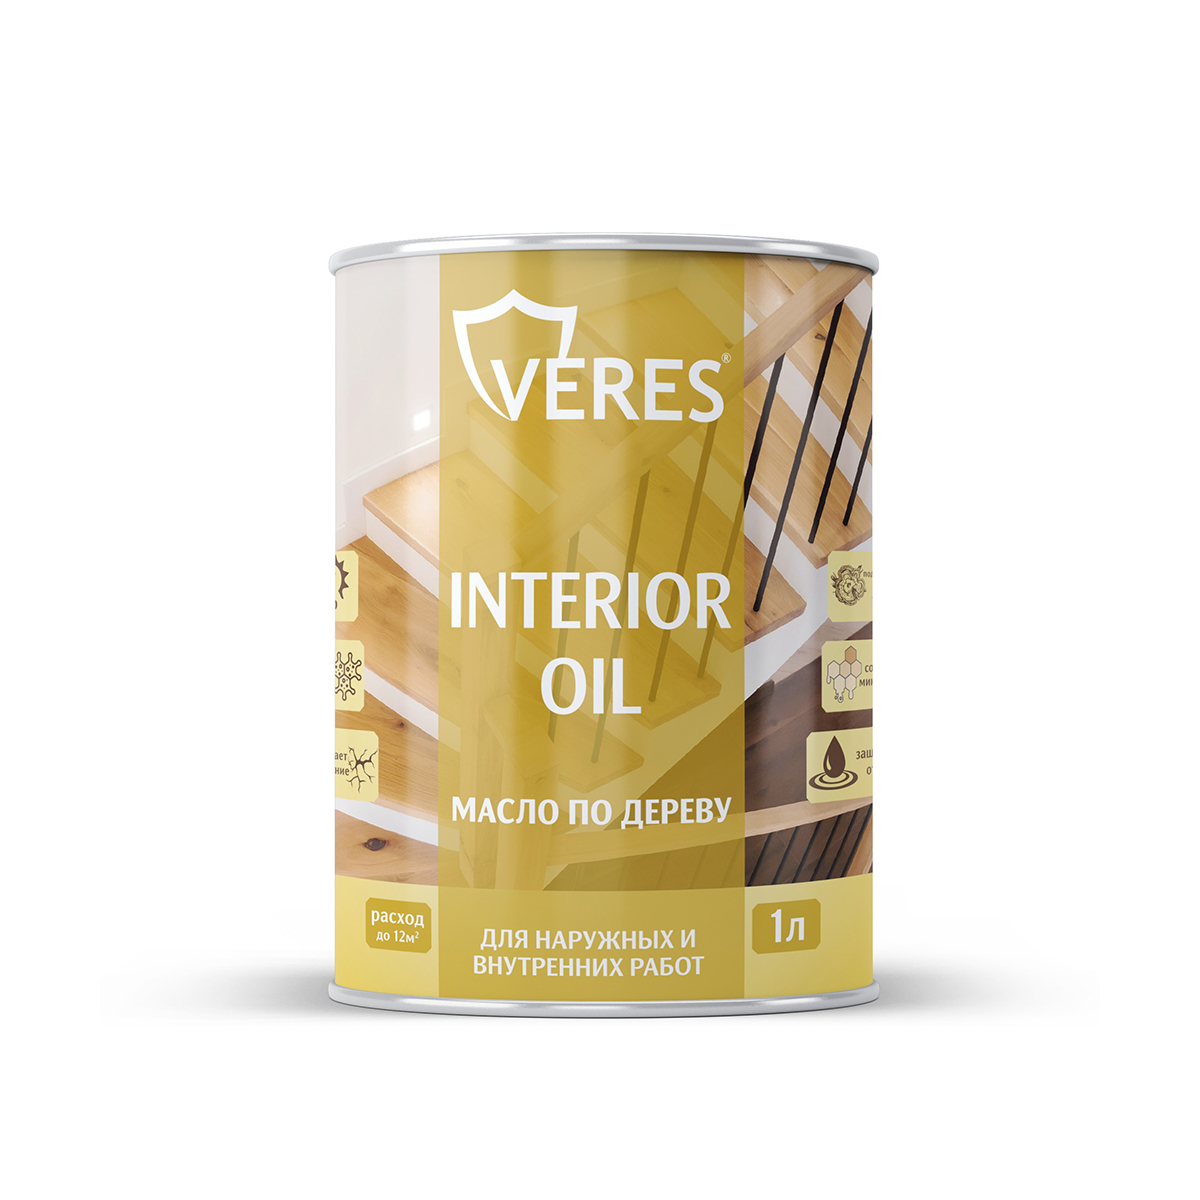 Масло для дерева Veres Interior Oil, 1 л, палисандр масло детское для тела после купания 115мл